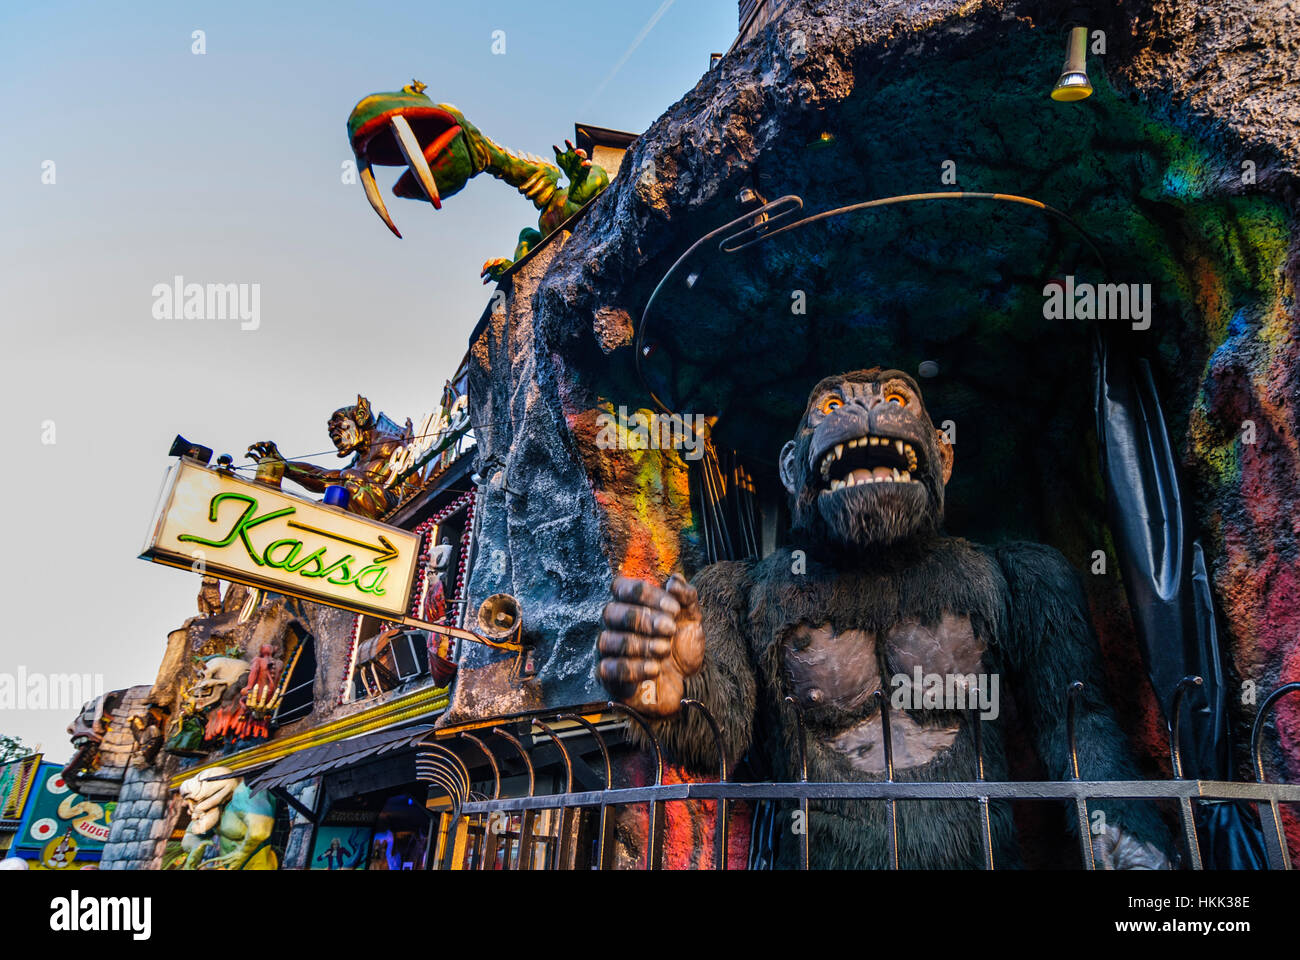 Wien, Vienna: Prater; Ghost castle with oversized gorilla, 02., Wien, Austria Stock Photo